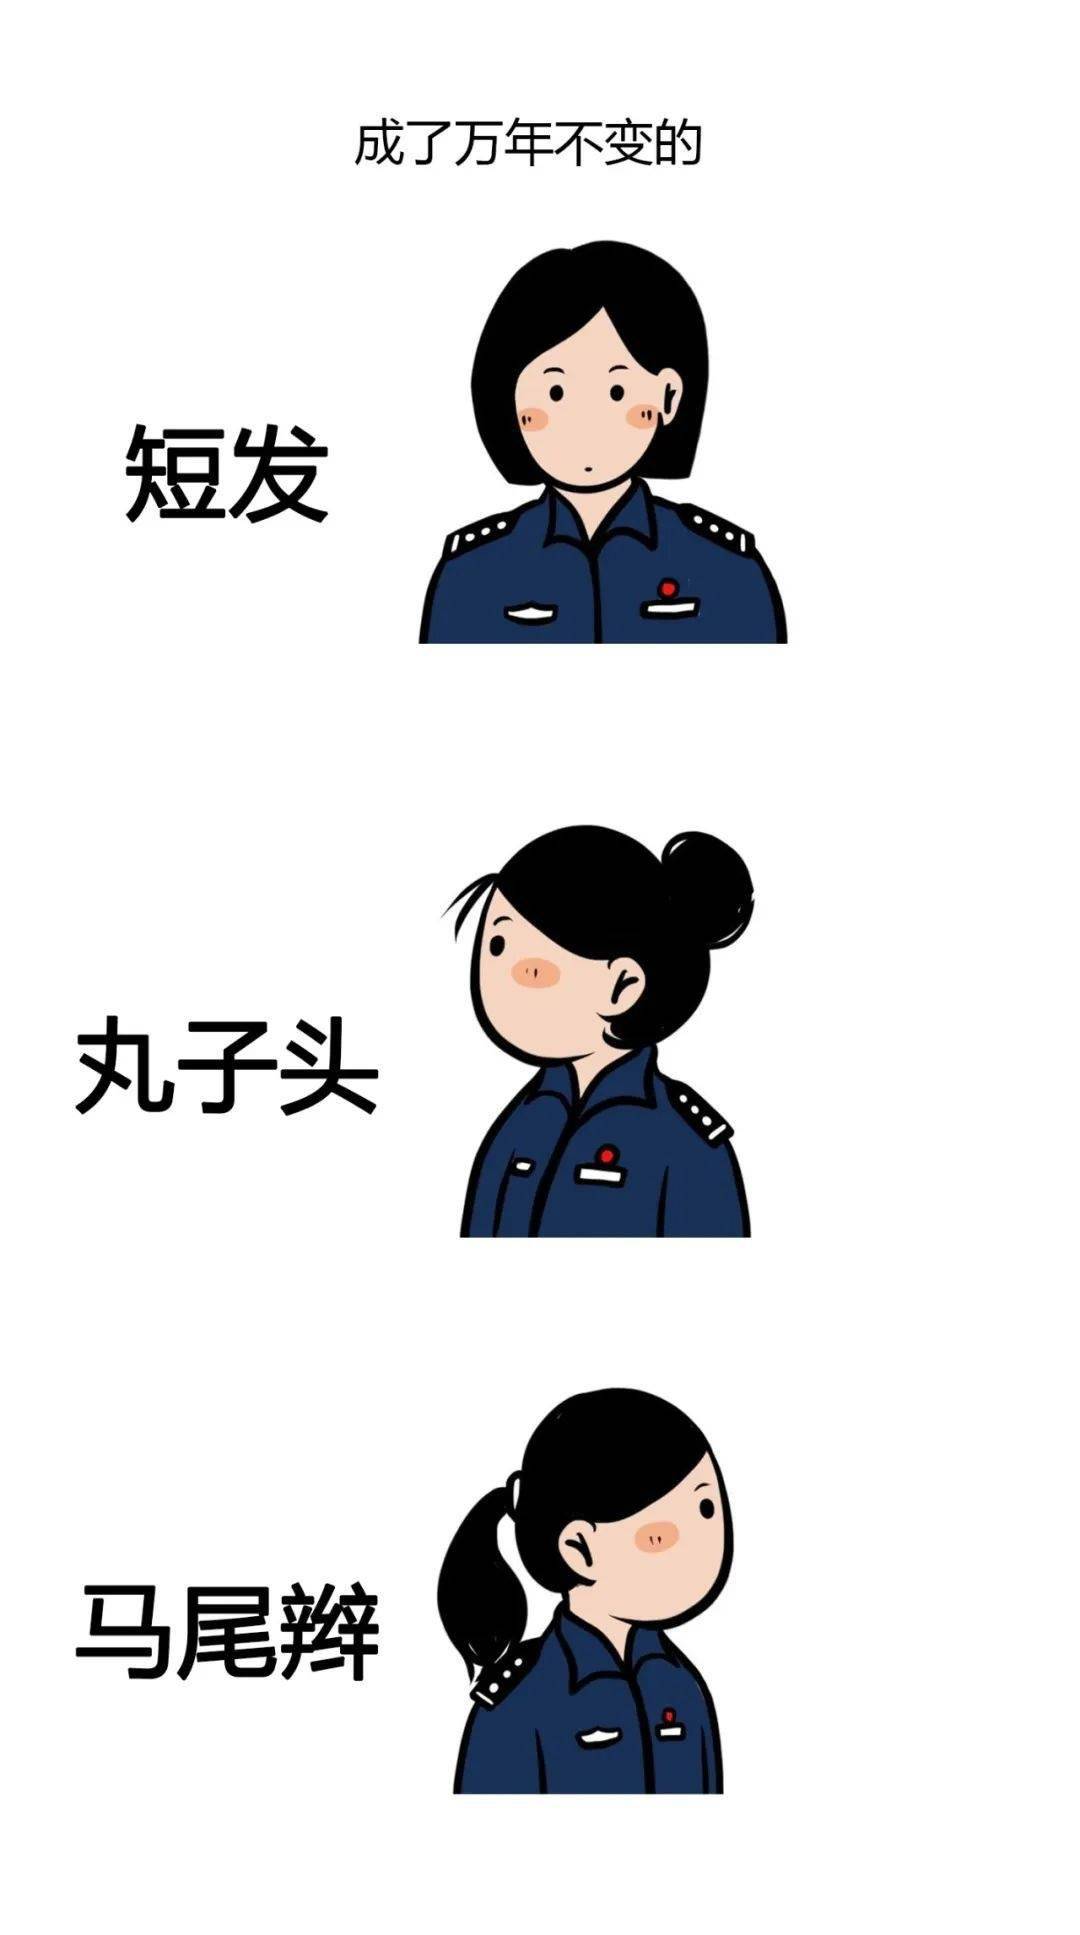 个大头女警 都是哆啦a梦 头大没毛病 聪明又可爱 本文转自:中国警察网